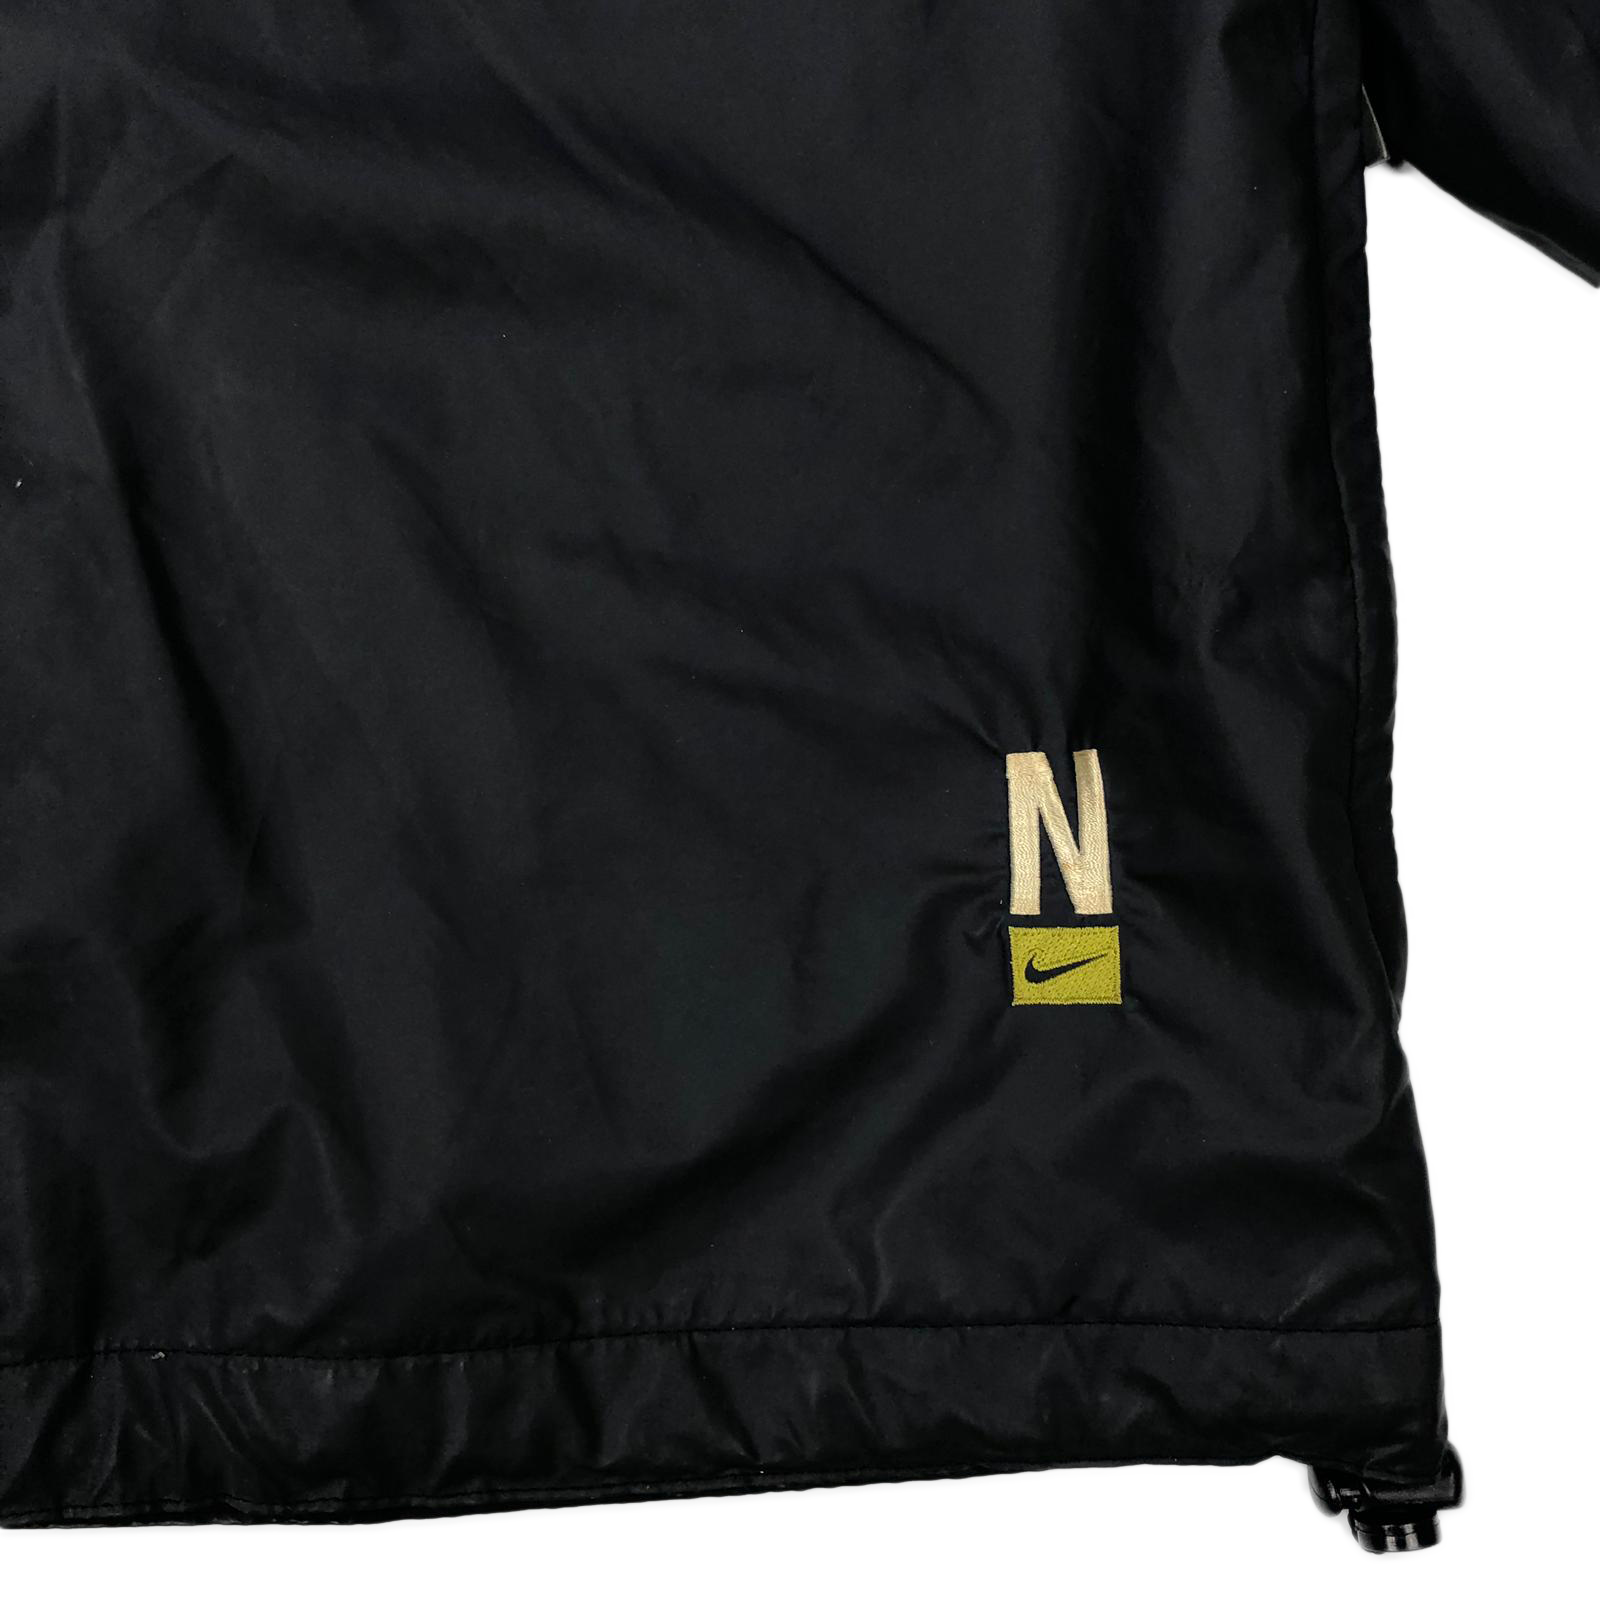 90's Nike jacket